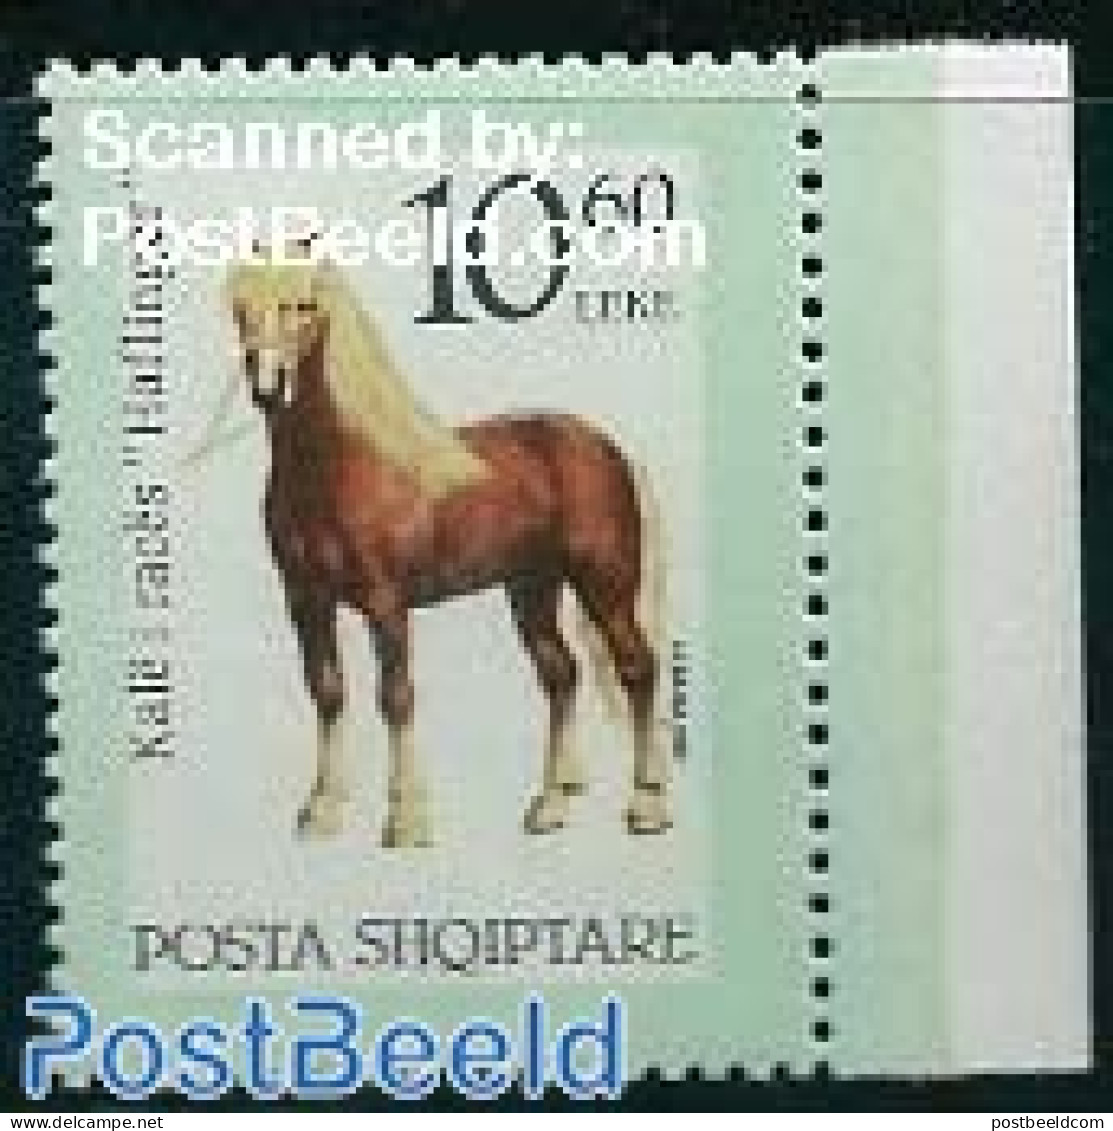 Albania 1992 Horses 1v, Green Cadre, Mint NH, Nature - Various - Horses - Errors, Misprints, Plate Flaws - Errores En Los Sellos